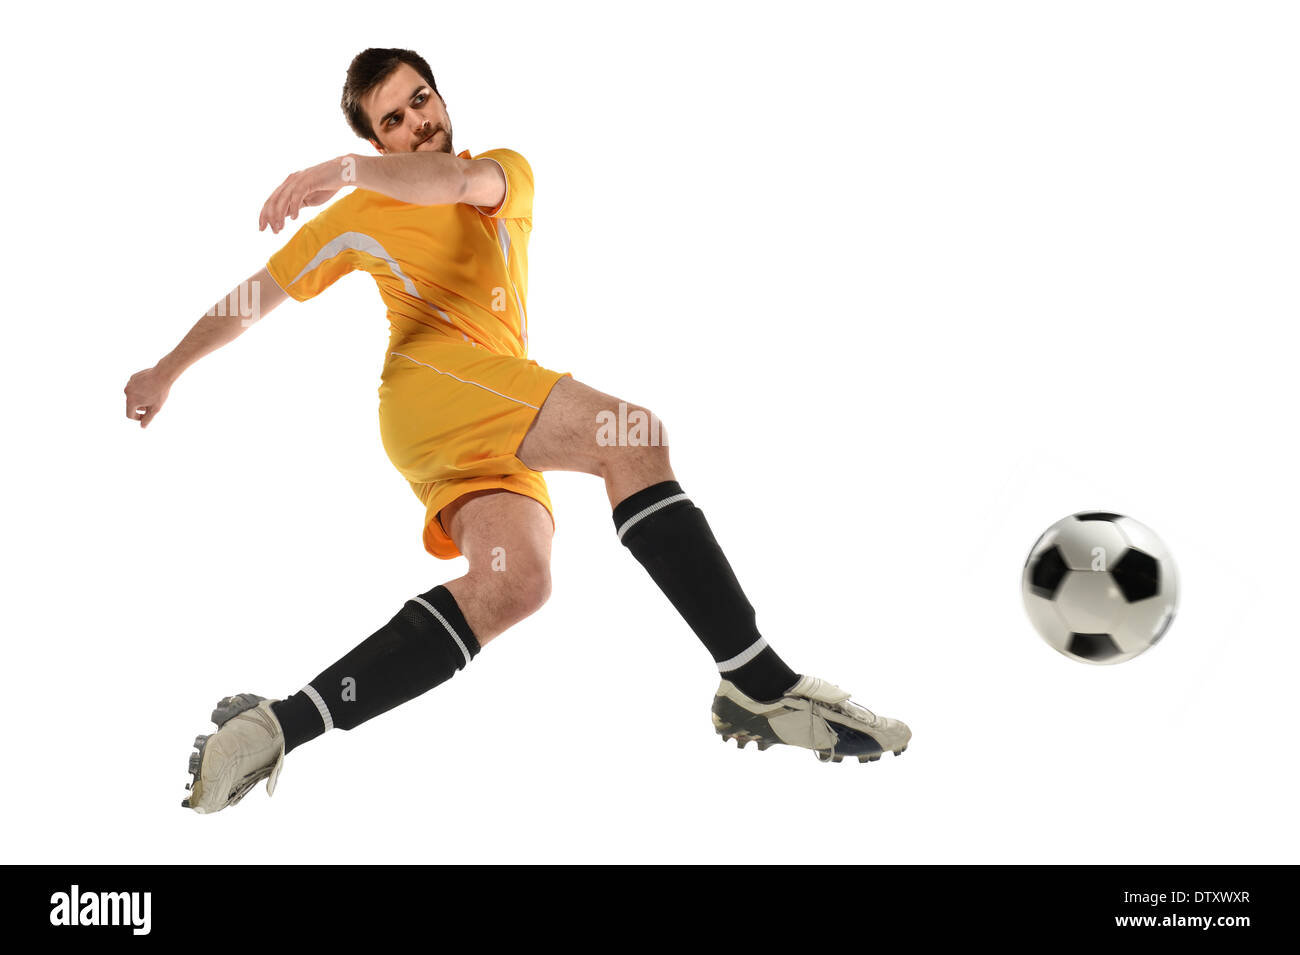 Soccer player kicking ball dans l'air isolé sur fond blanc Banque D'Images